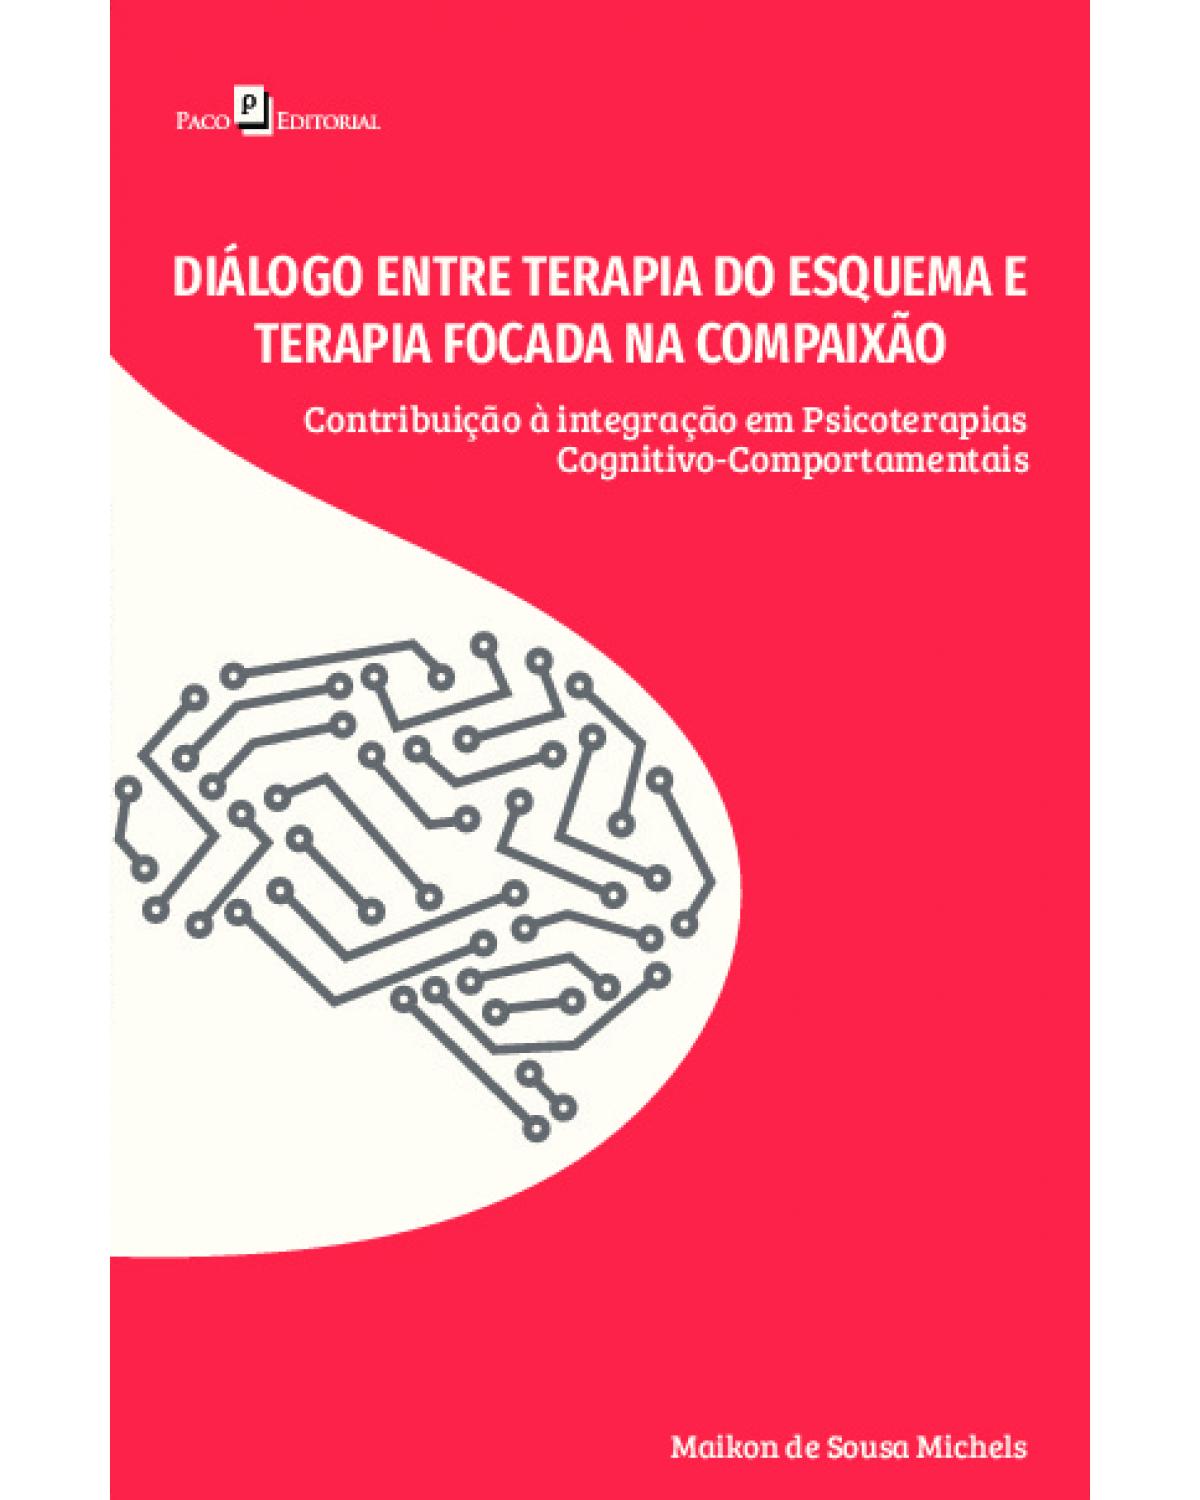 Diálogo entre terapia do esquema e terapia focada na compaixão - contribuição à integração em psicoterapias cognitivo-comportamentais - 1ª Edição | 2022